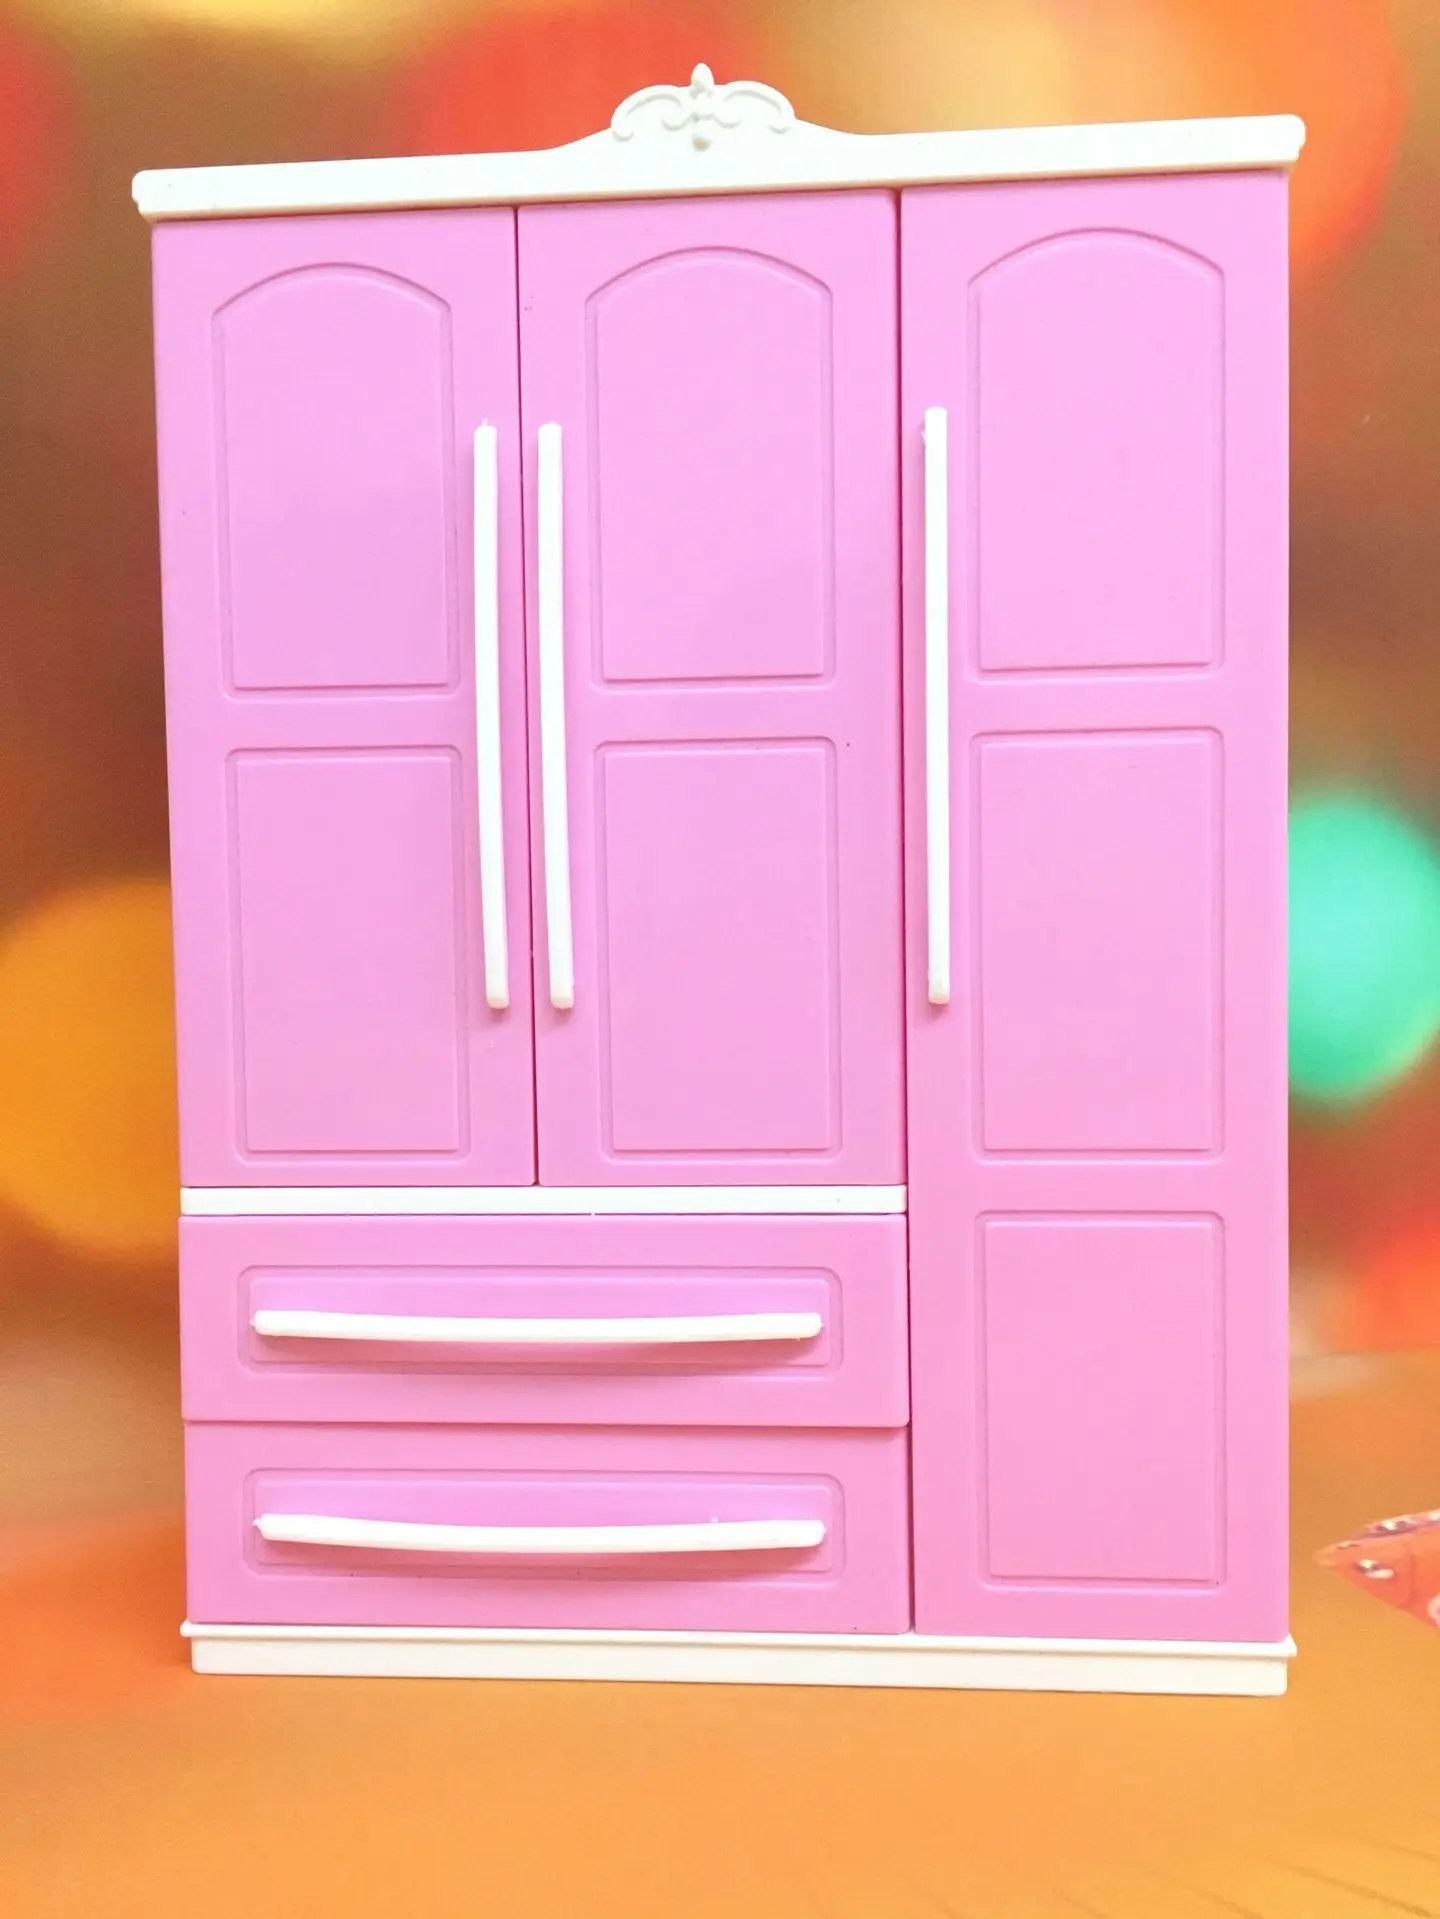 Maison de Poupées Mini Garde-robe Vêtements Cabinet for Kids Pretend Jouet 